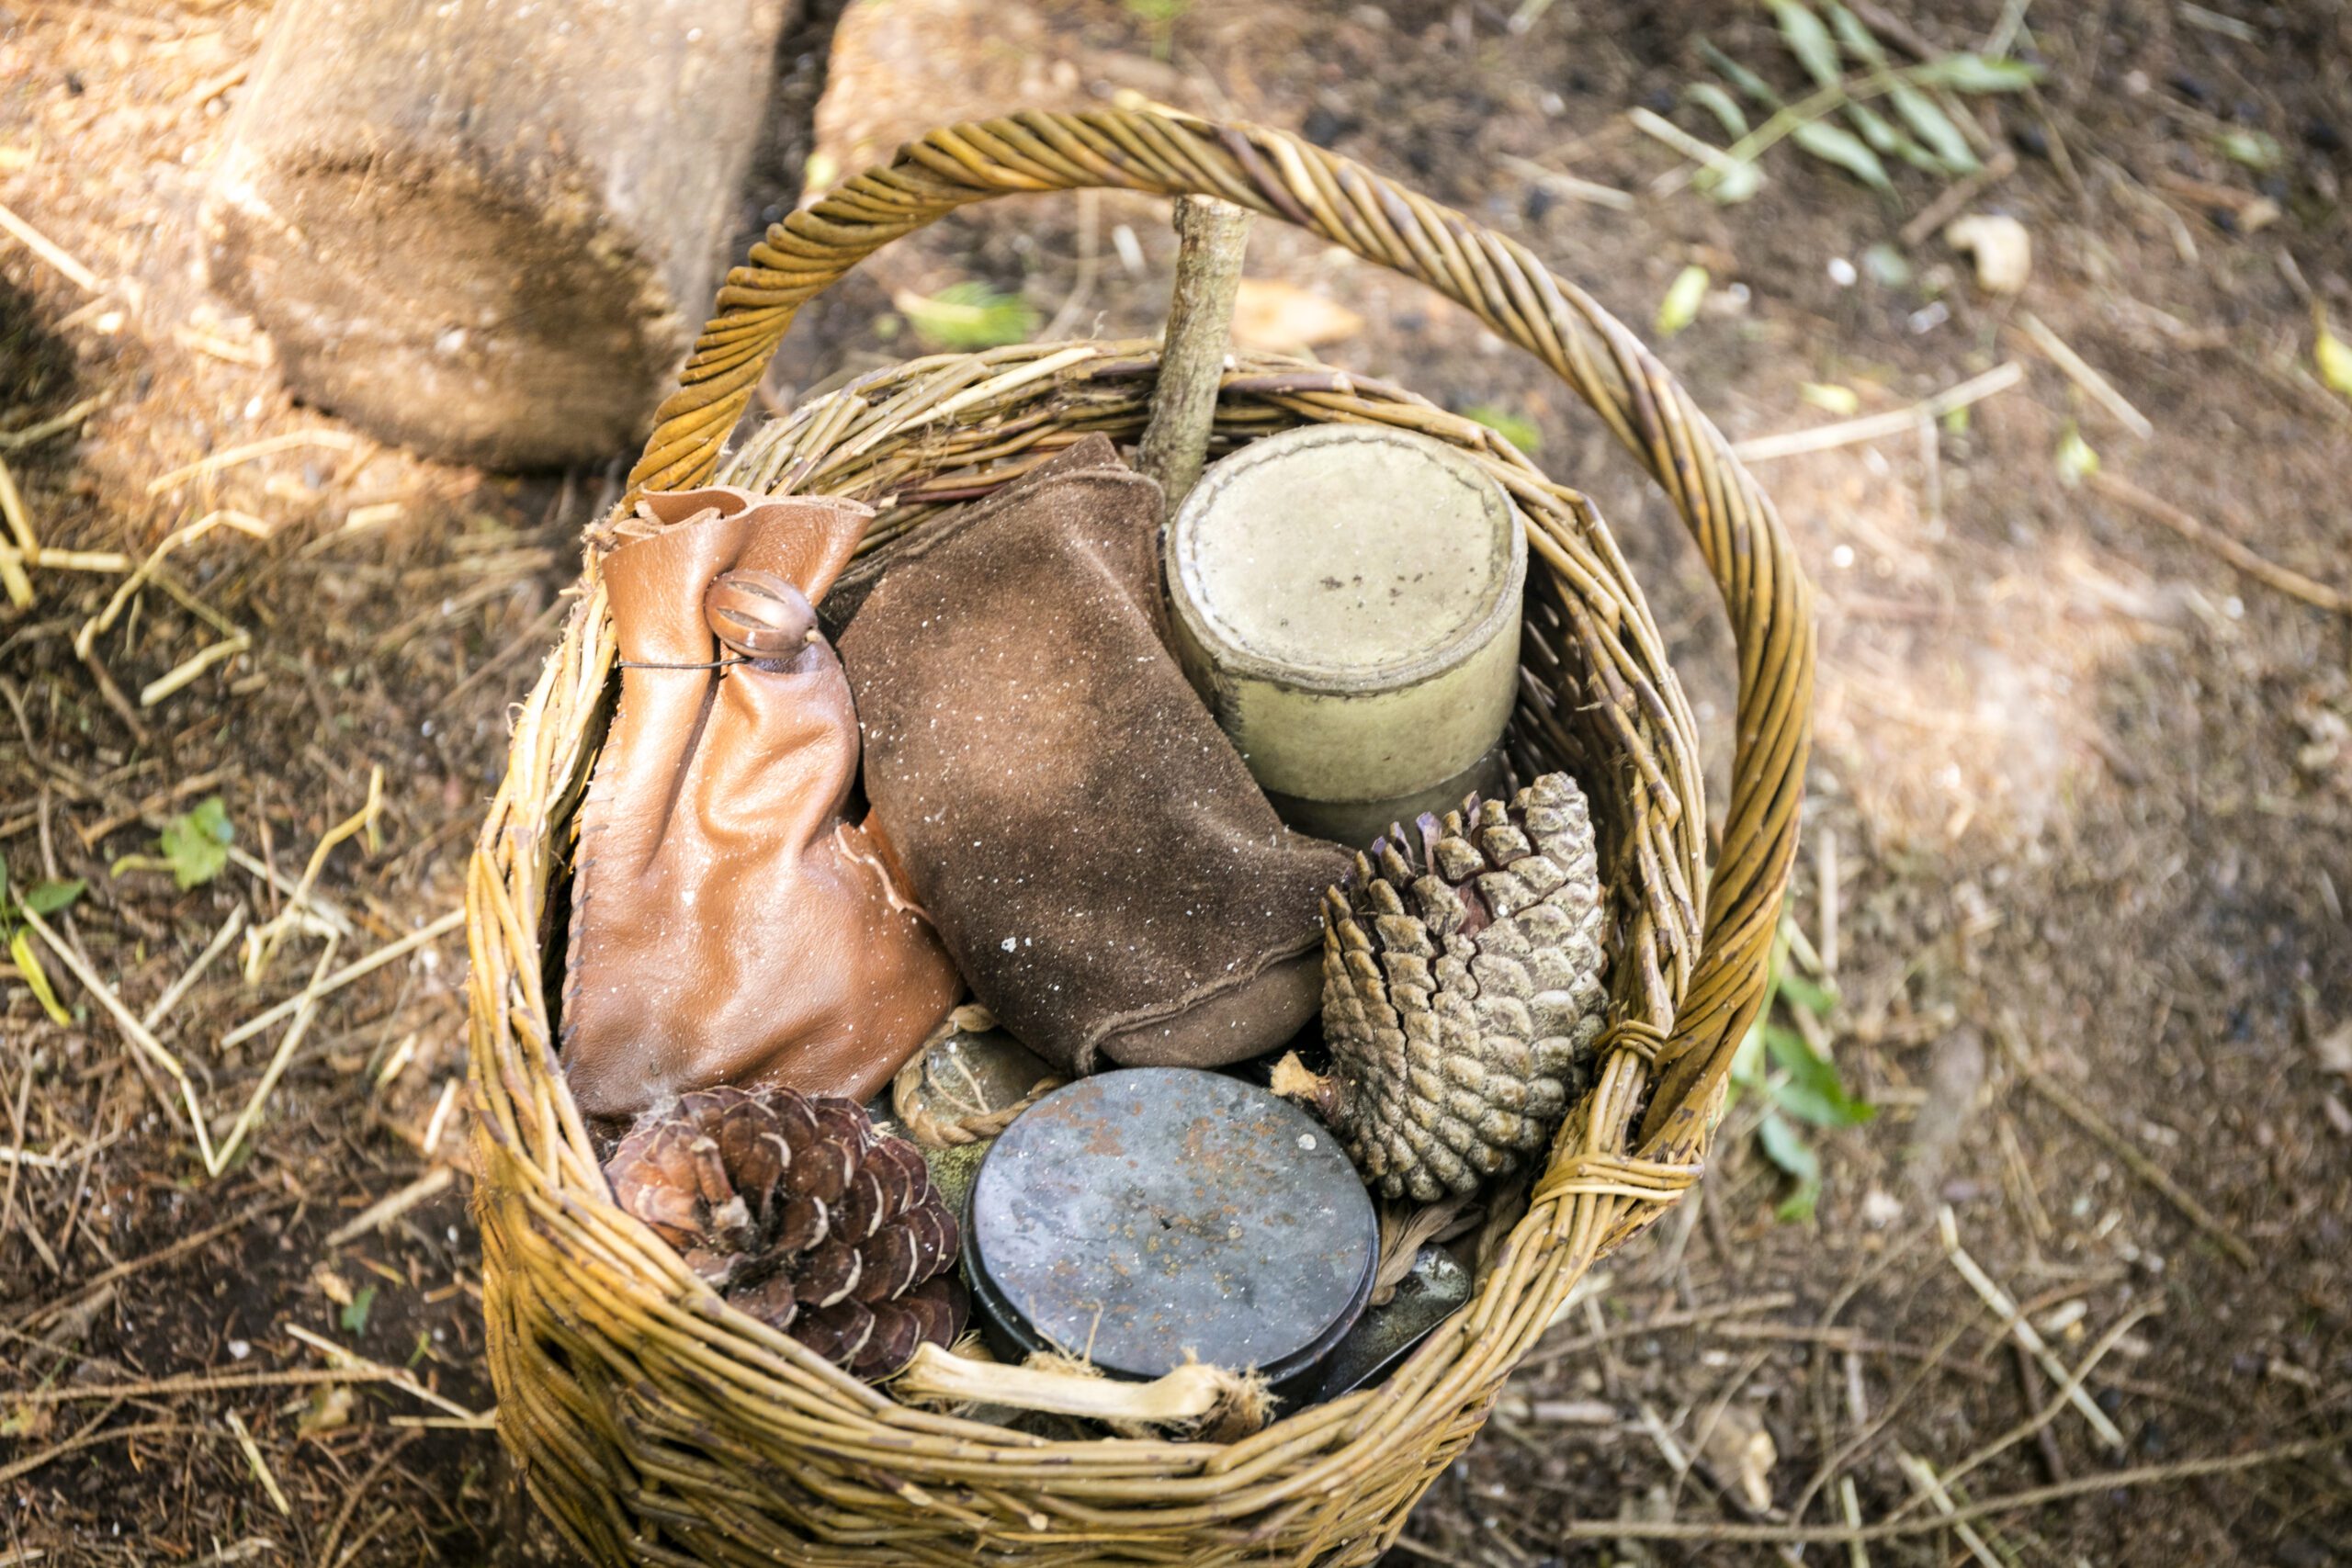 Basket of woodland finds